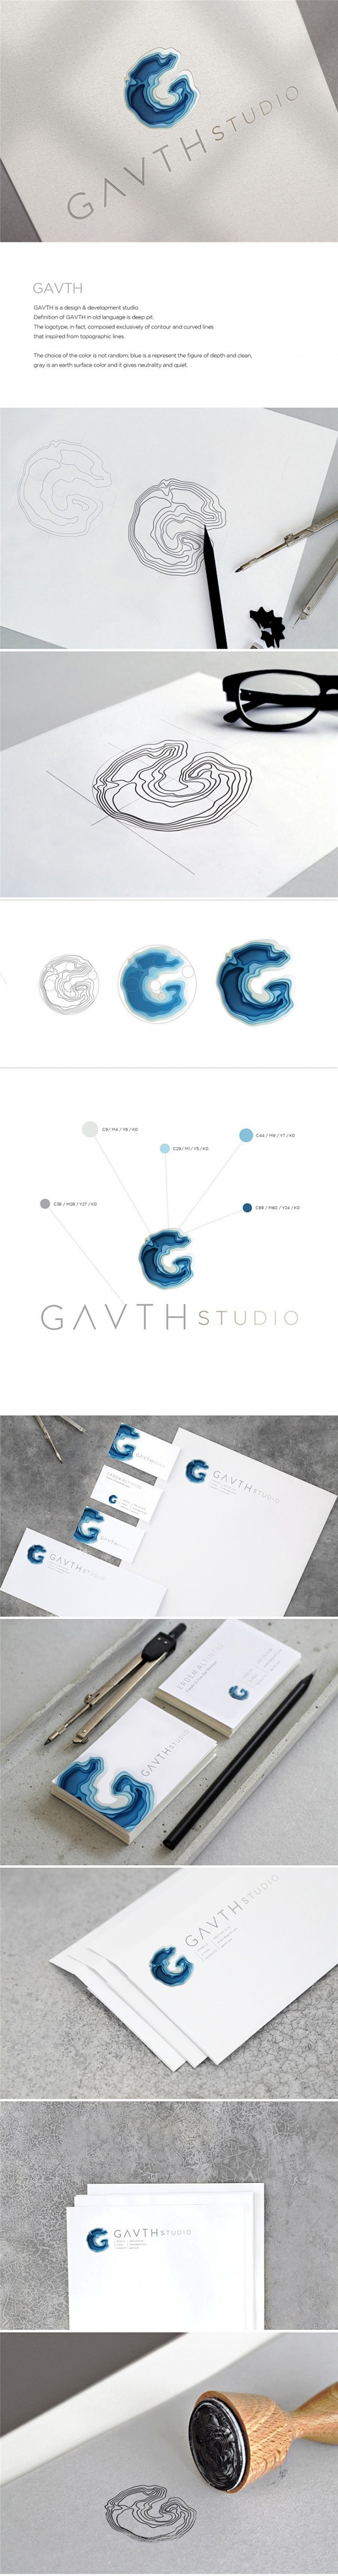 Gavth Studio工作室品牌形象设...